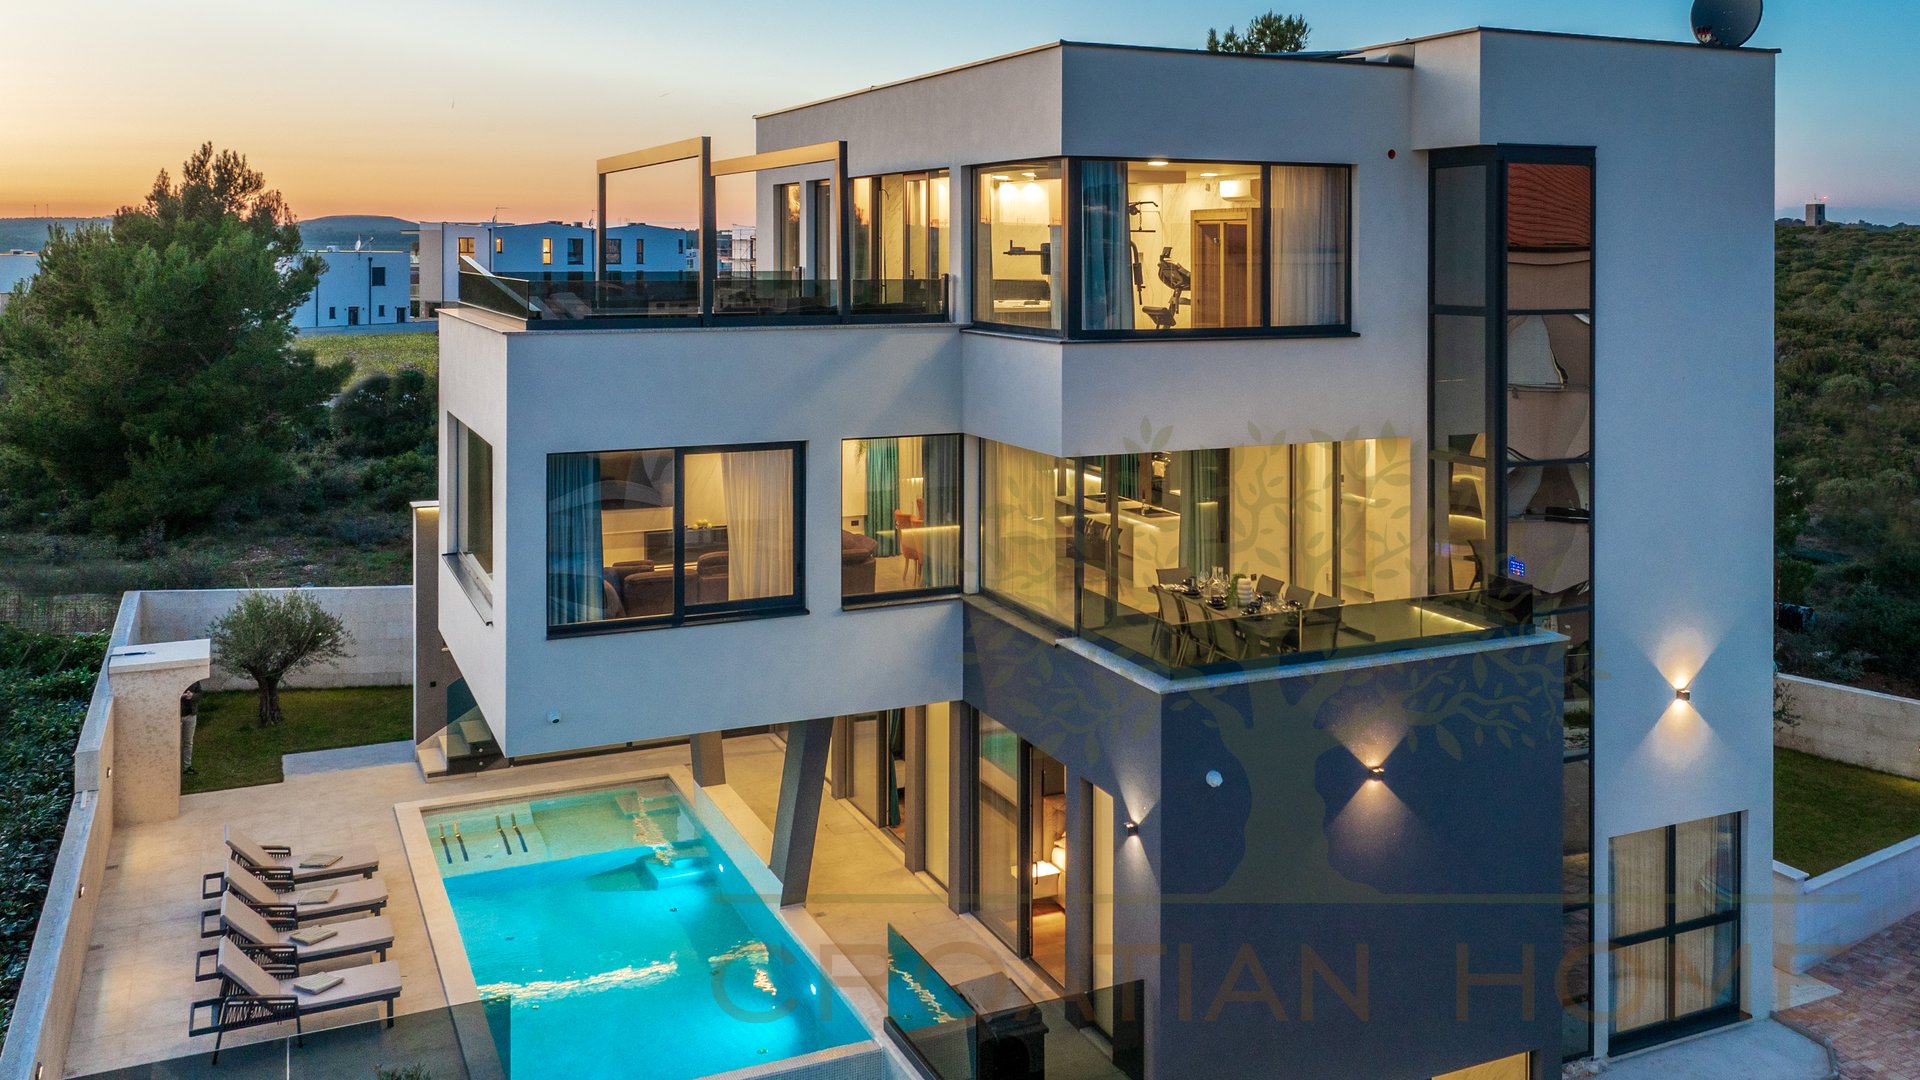 Luxus Villa mit Pool, Whirlpool, Aufzug  nur 100 m vom Meer mit herrvoragendem Ausblick auf das Meer